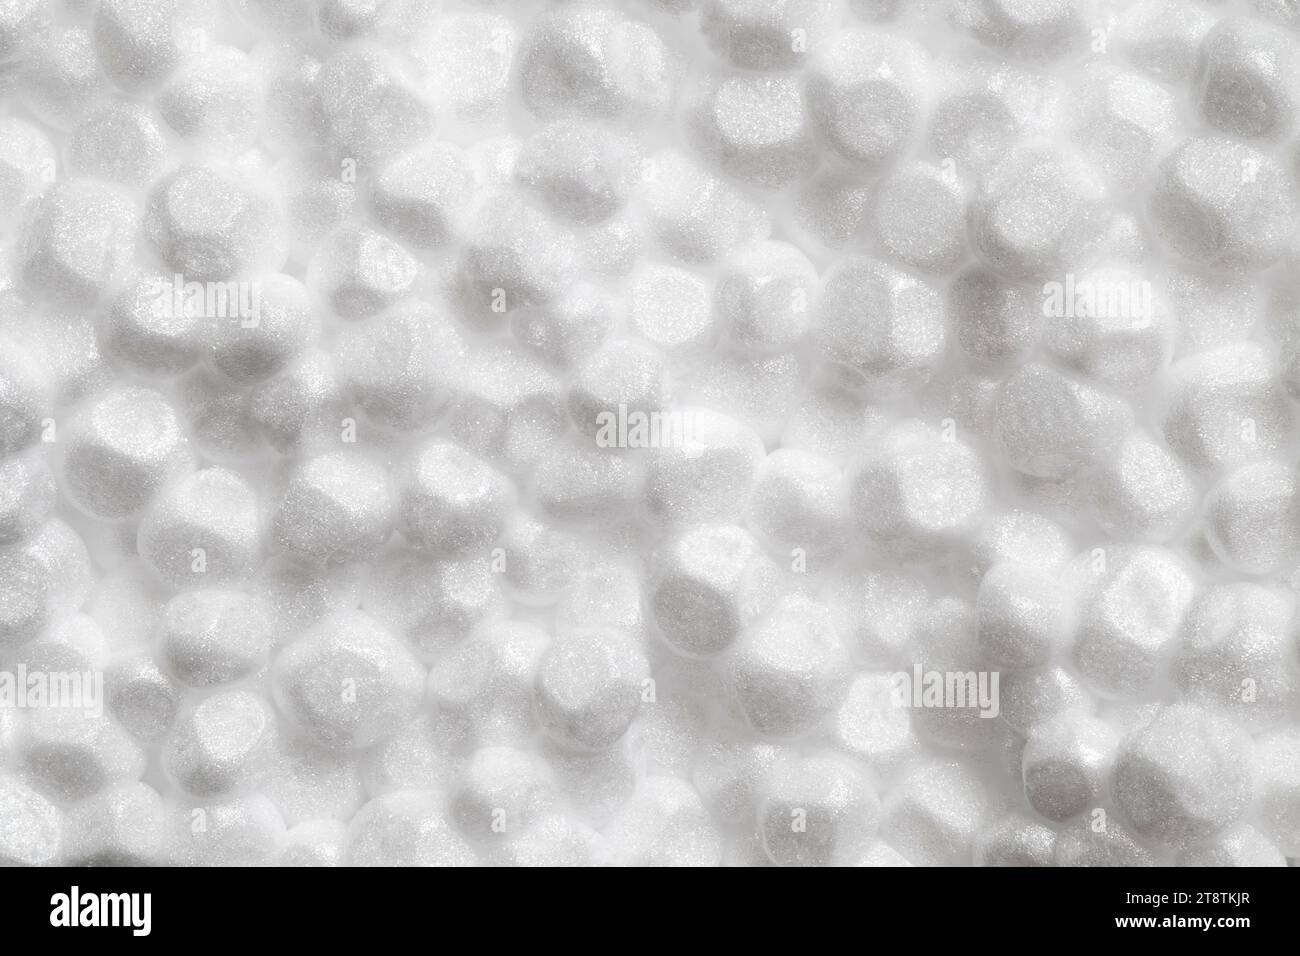 Polistirene espanso materiale poroso globuli bianchi cerchio, macro ravvicinato che rappresenta la schiuma, profondità di campo completa Foto Stock